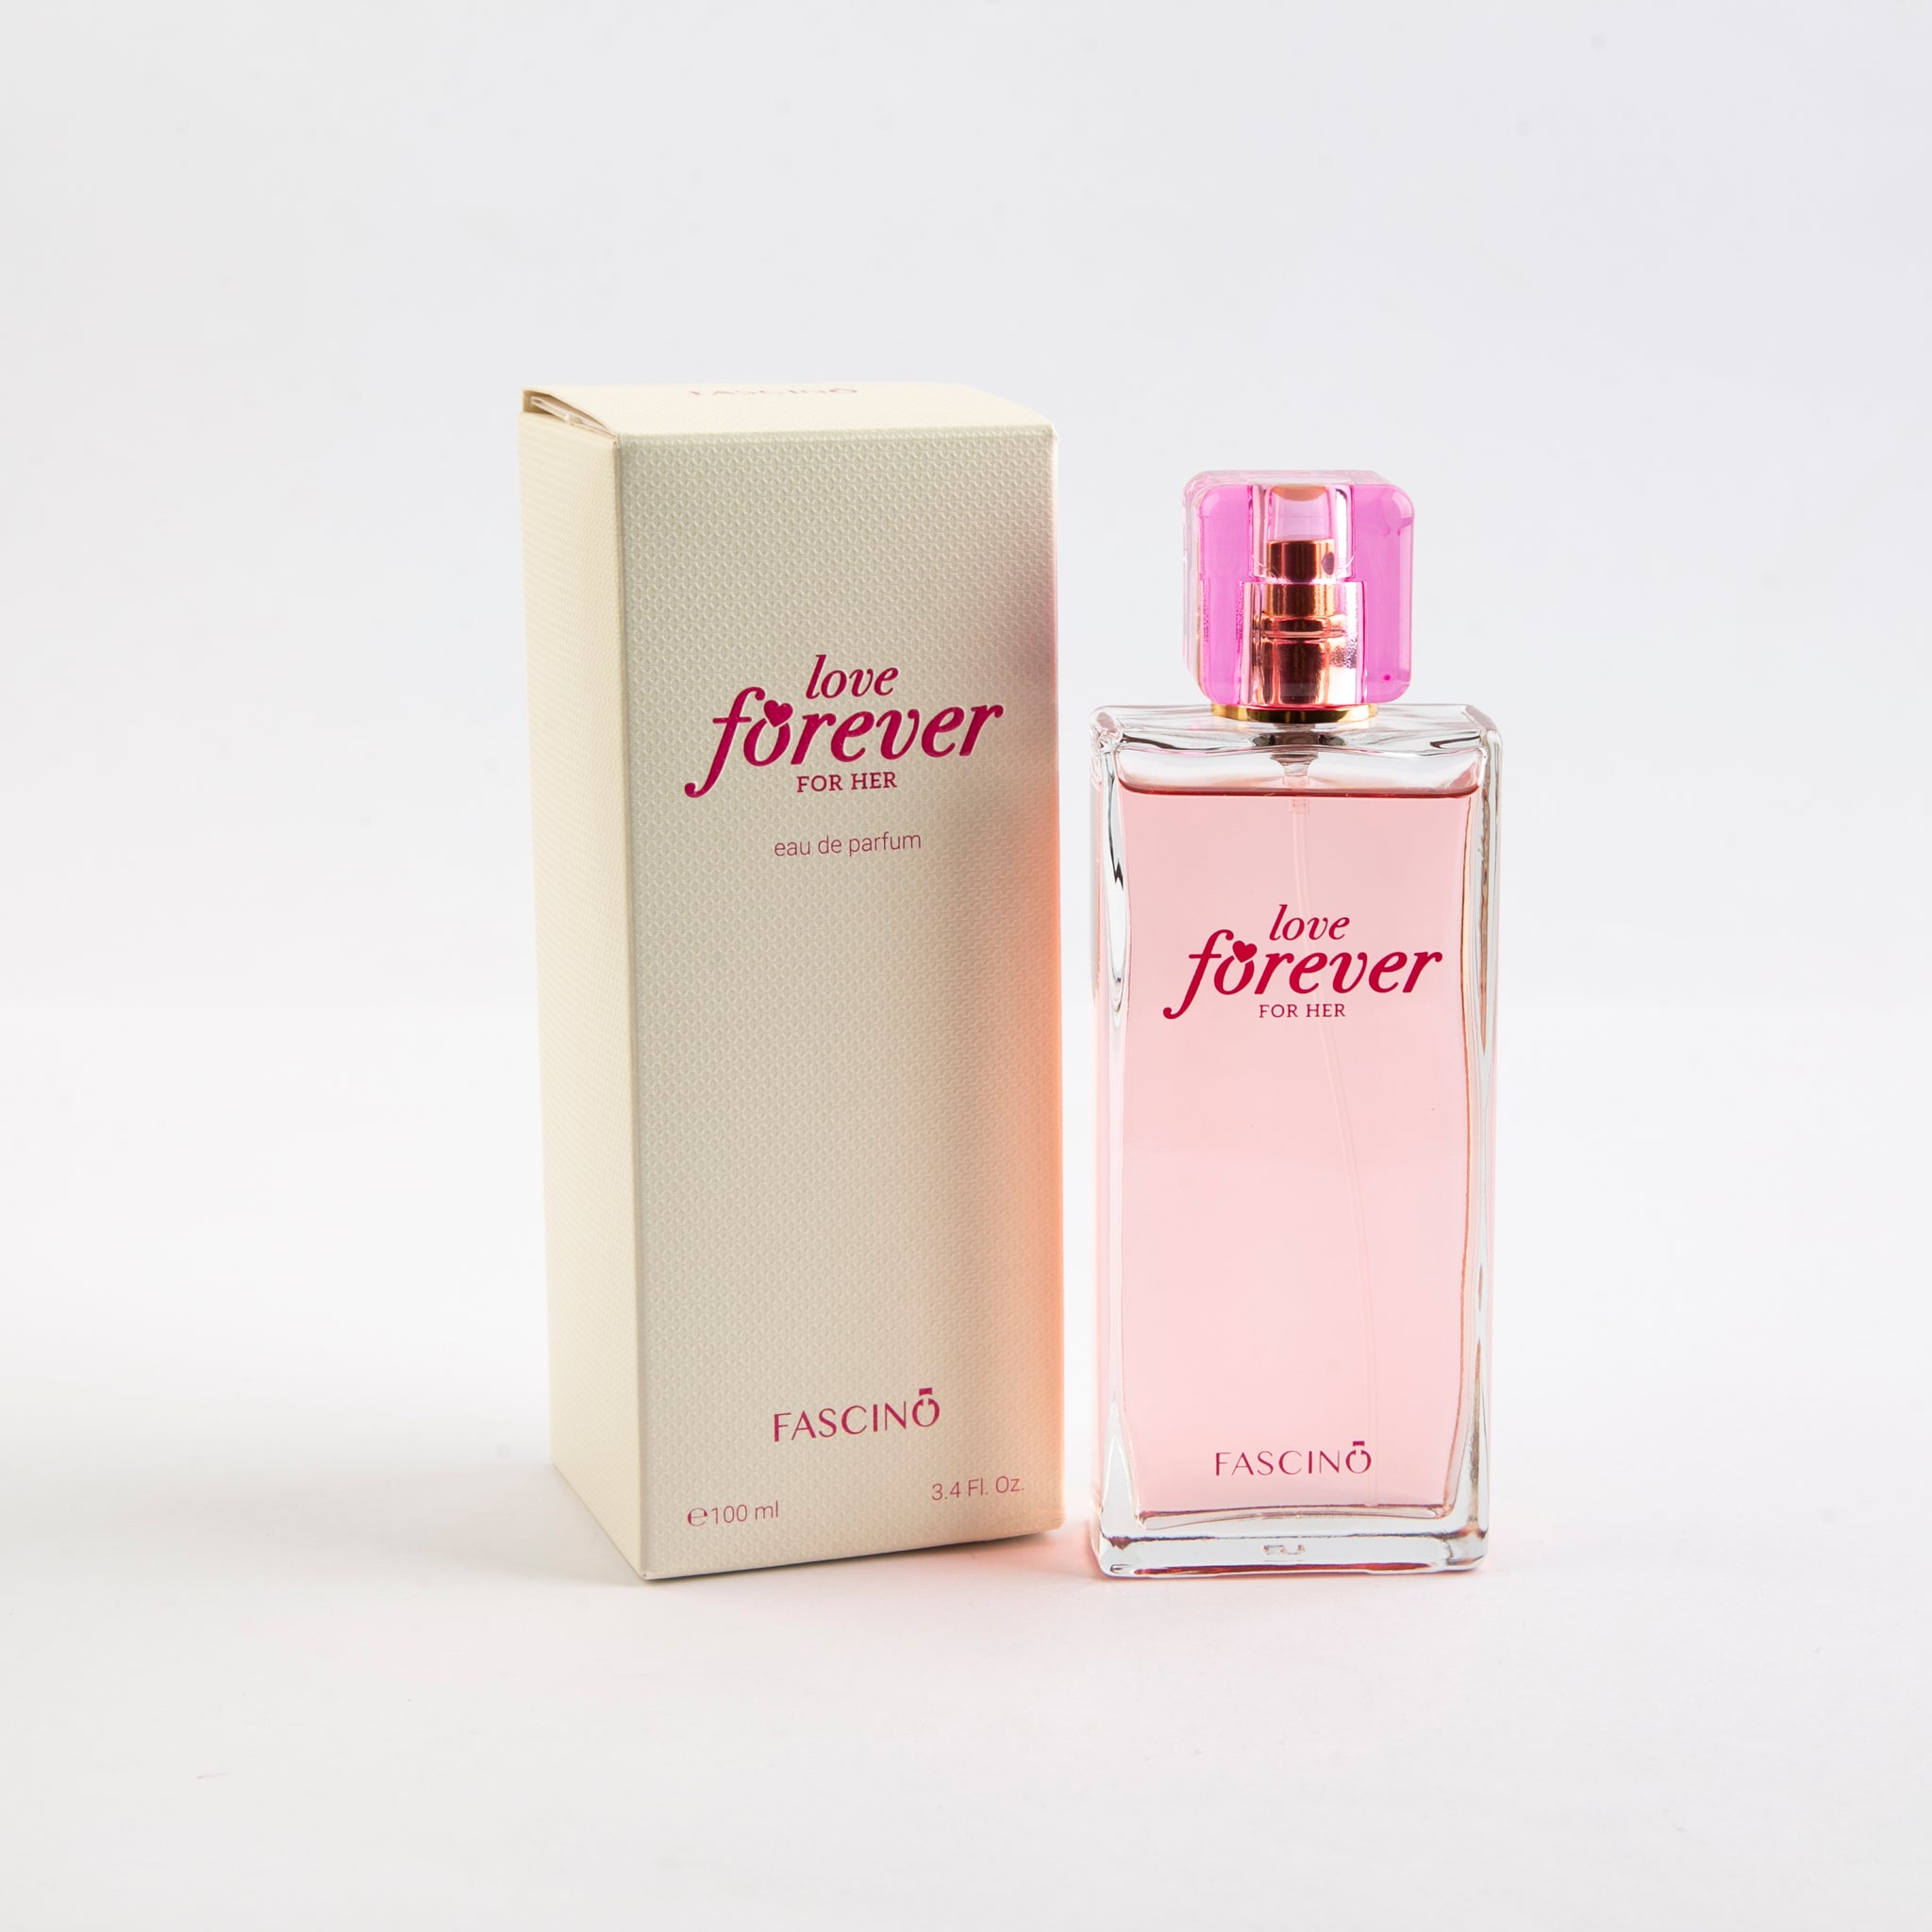 love forever perfume